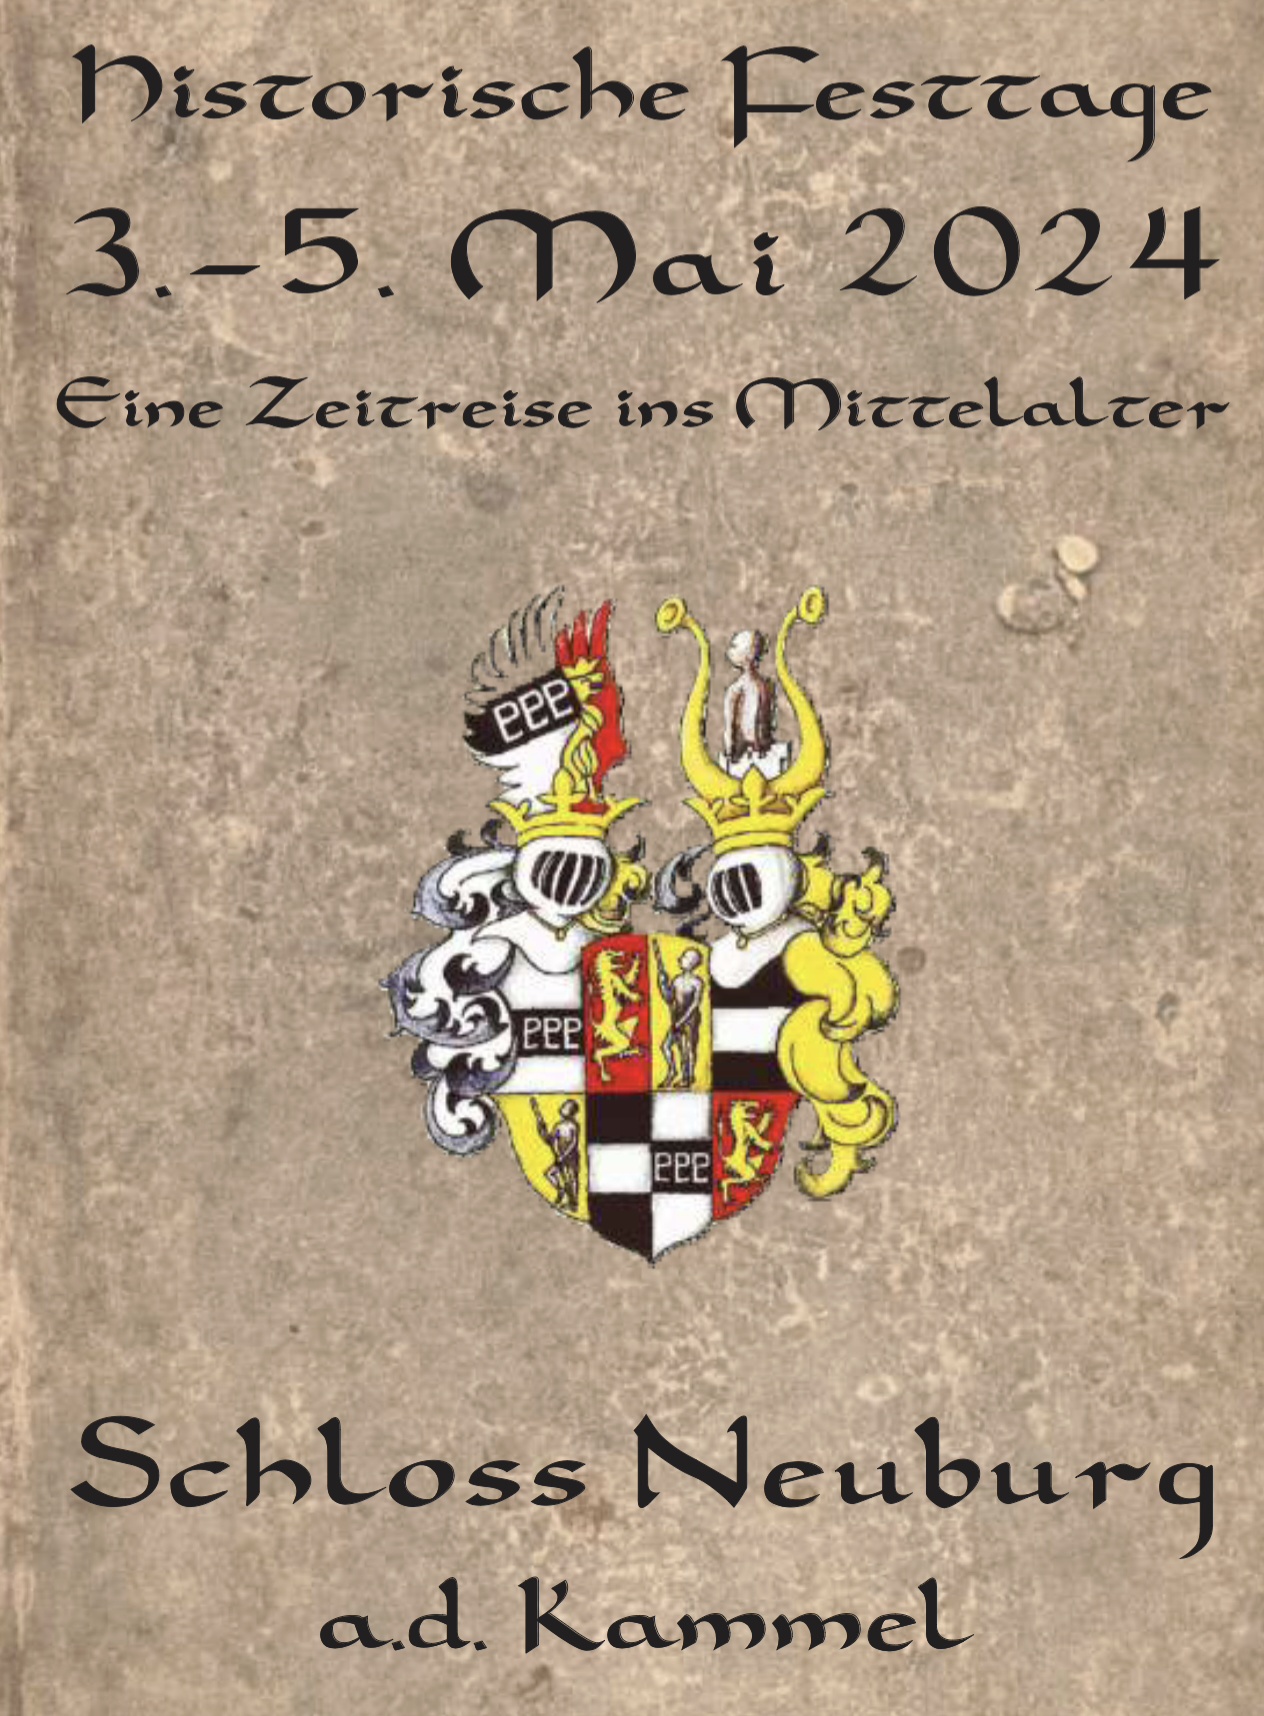 Historische Festtage vom 3. bis 5. Mai 2024 am Schloss Neuburg